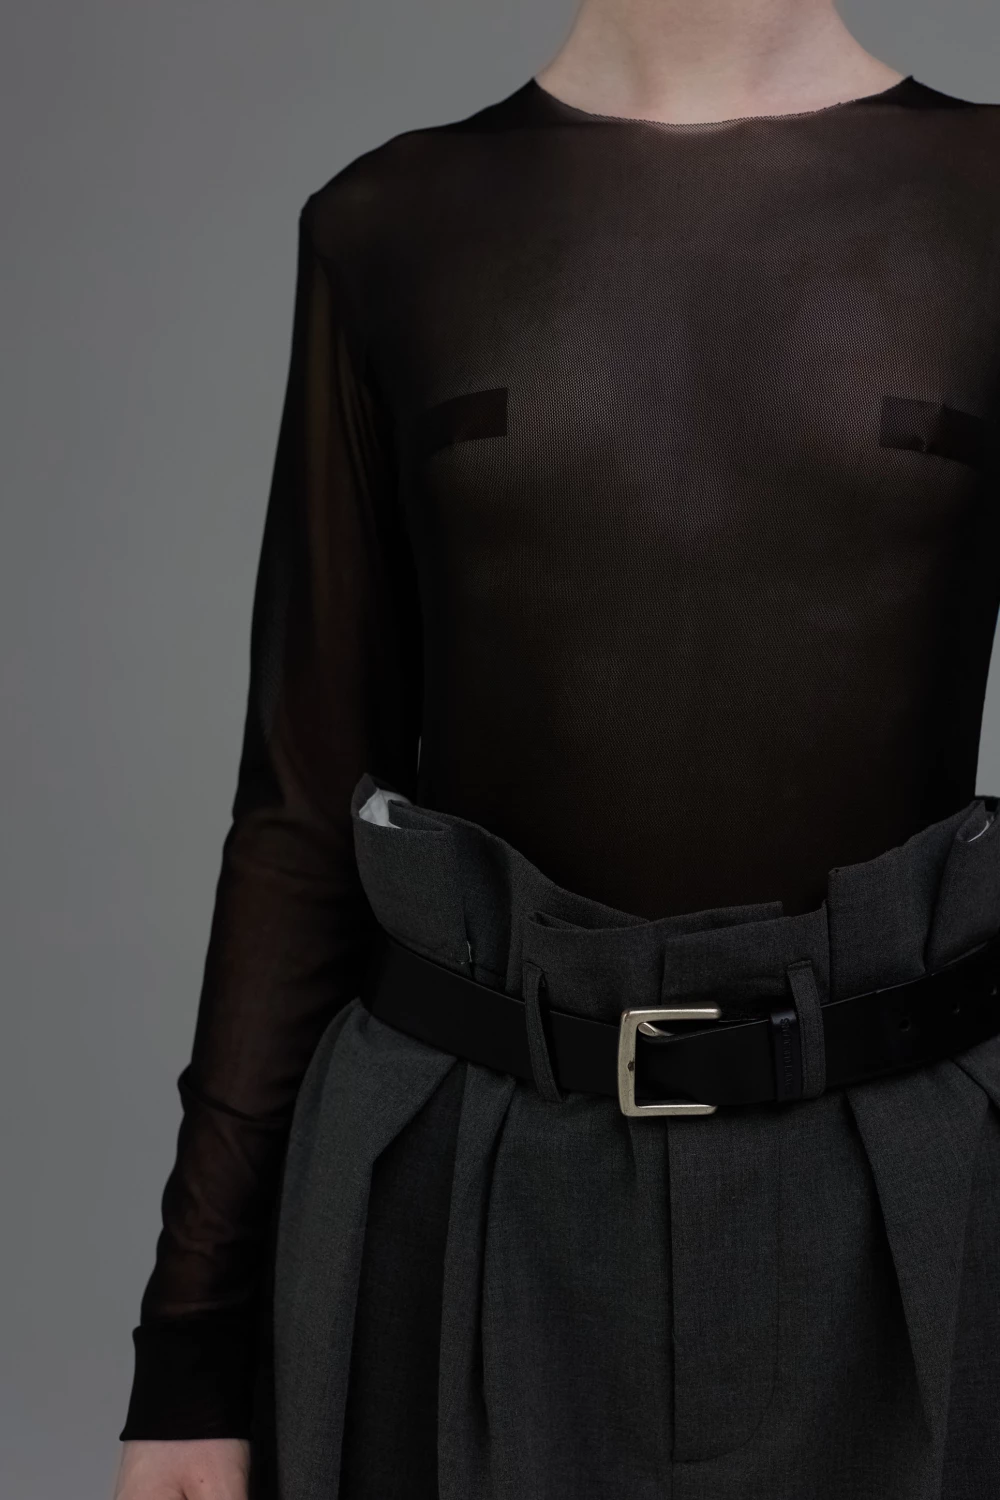 bodysuit "mesh" in black color